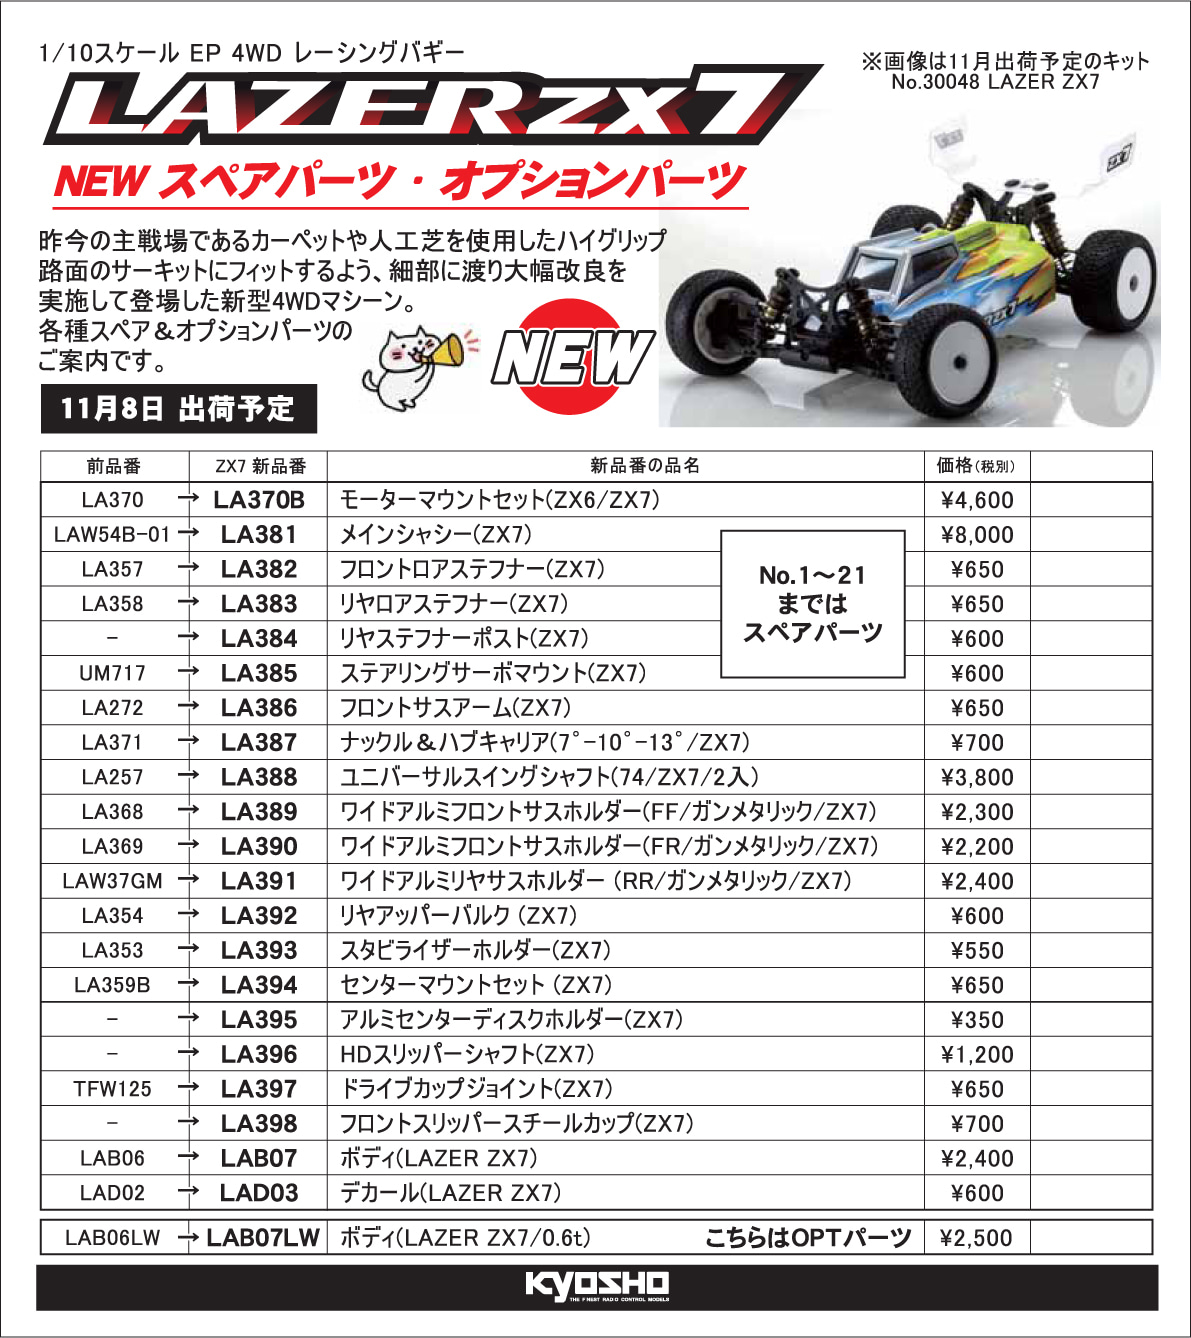 京商「1/10 EP 4WD レーシングバギー レーザーZX7用 スペアパーツ」新 